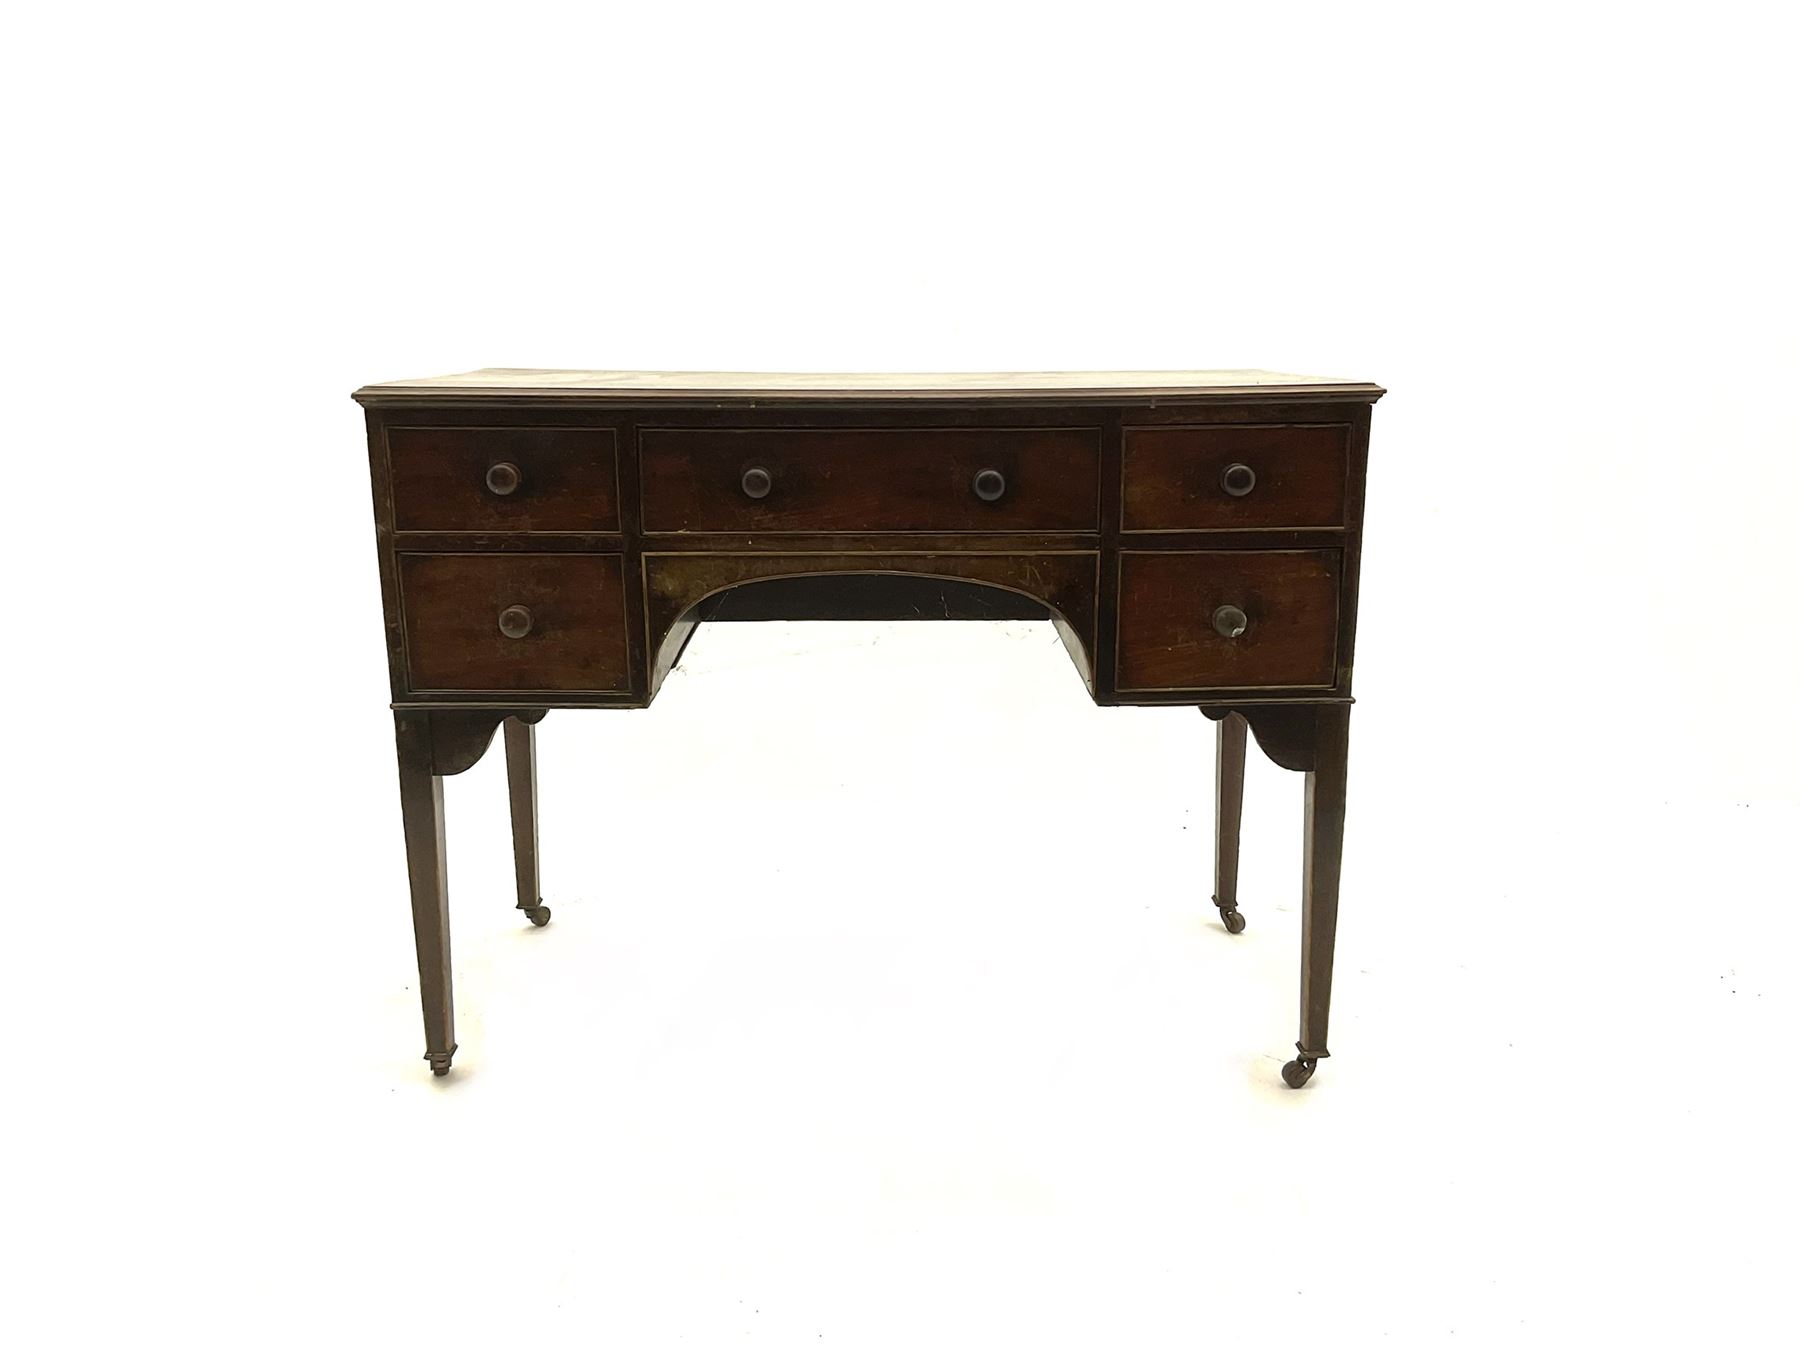 19th century mahogany kneehole dressing table desk